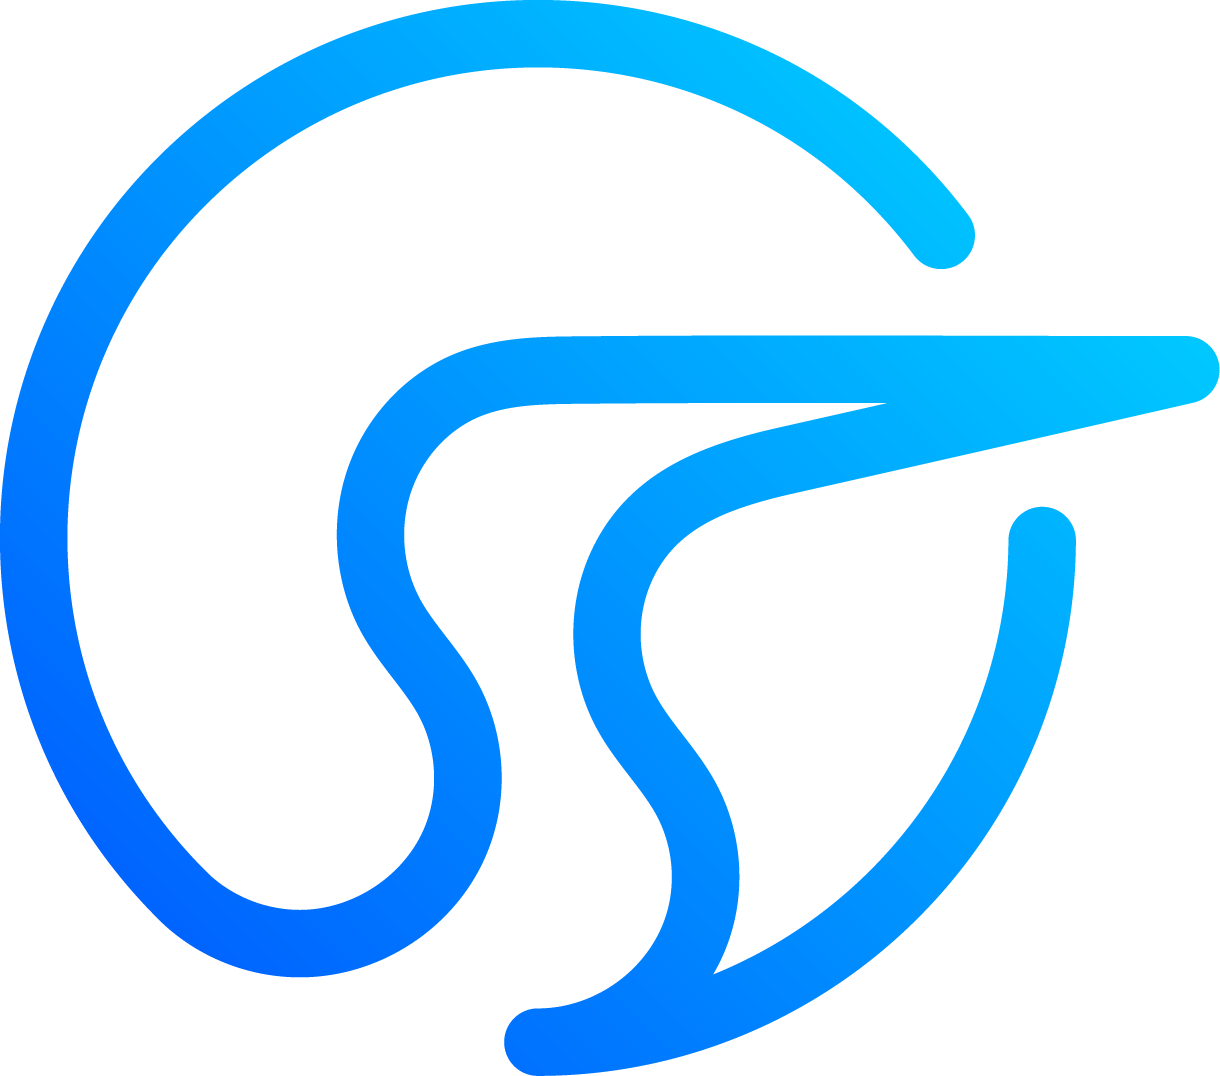 Stork logo 2